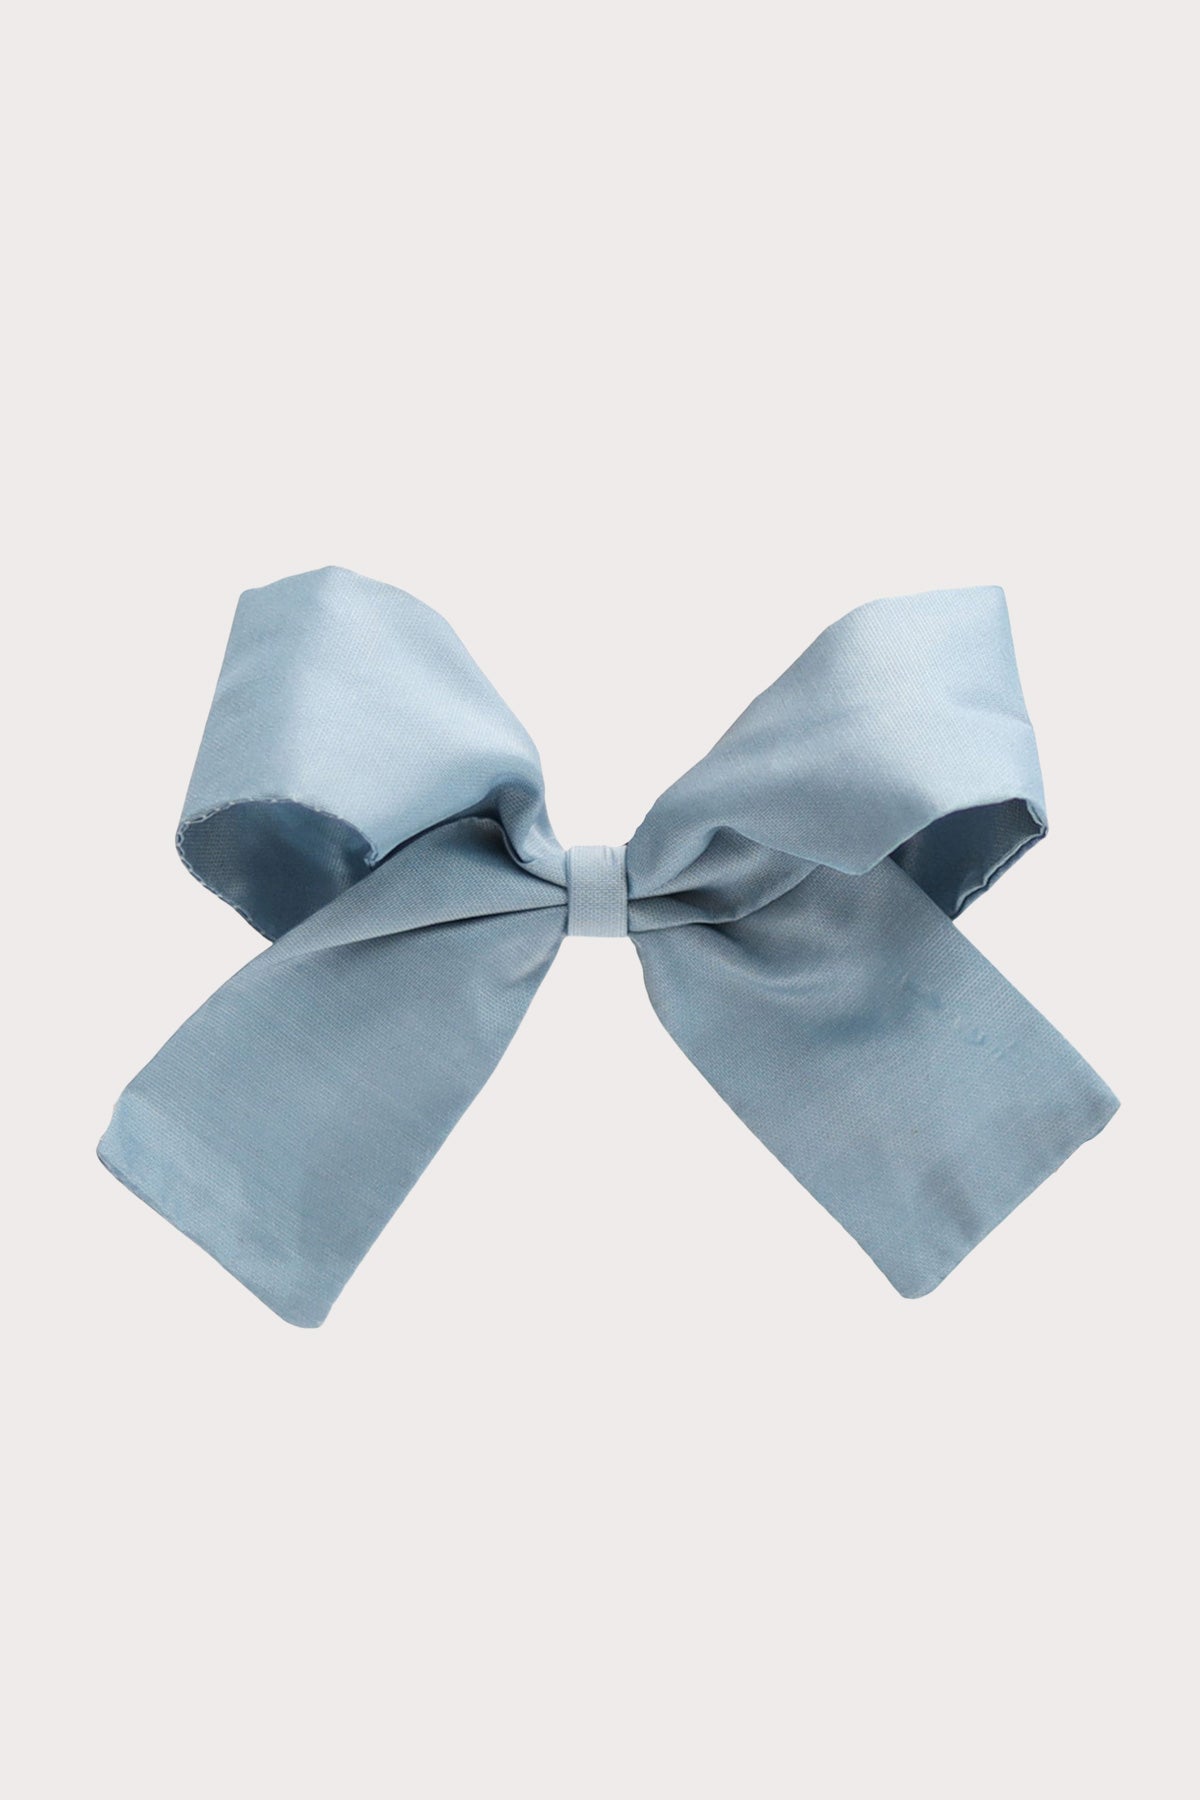 olilia designs silk taffeta hair bow french blue